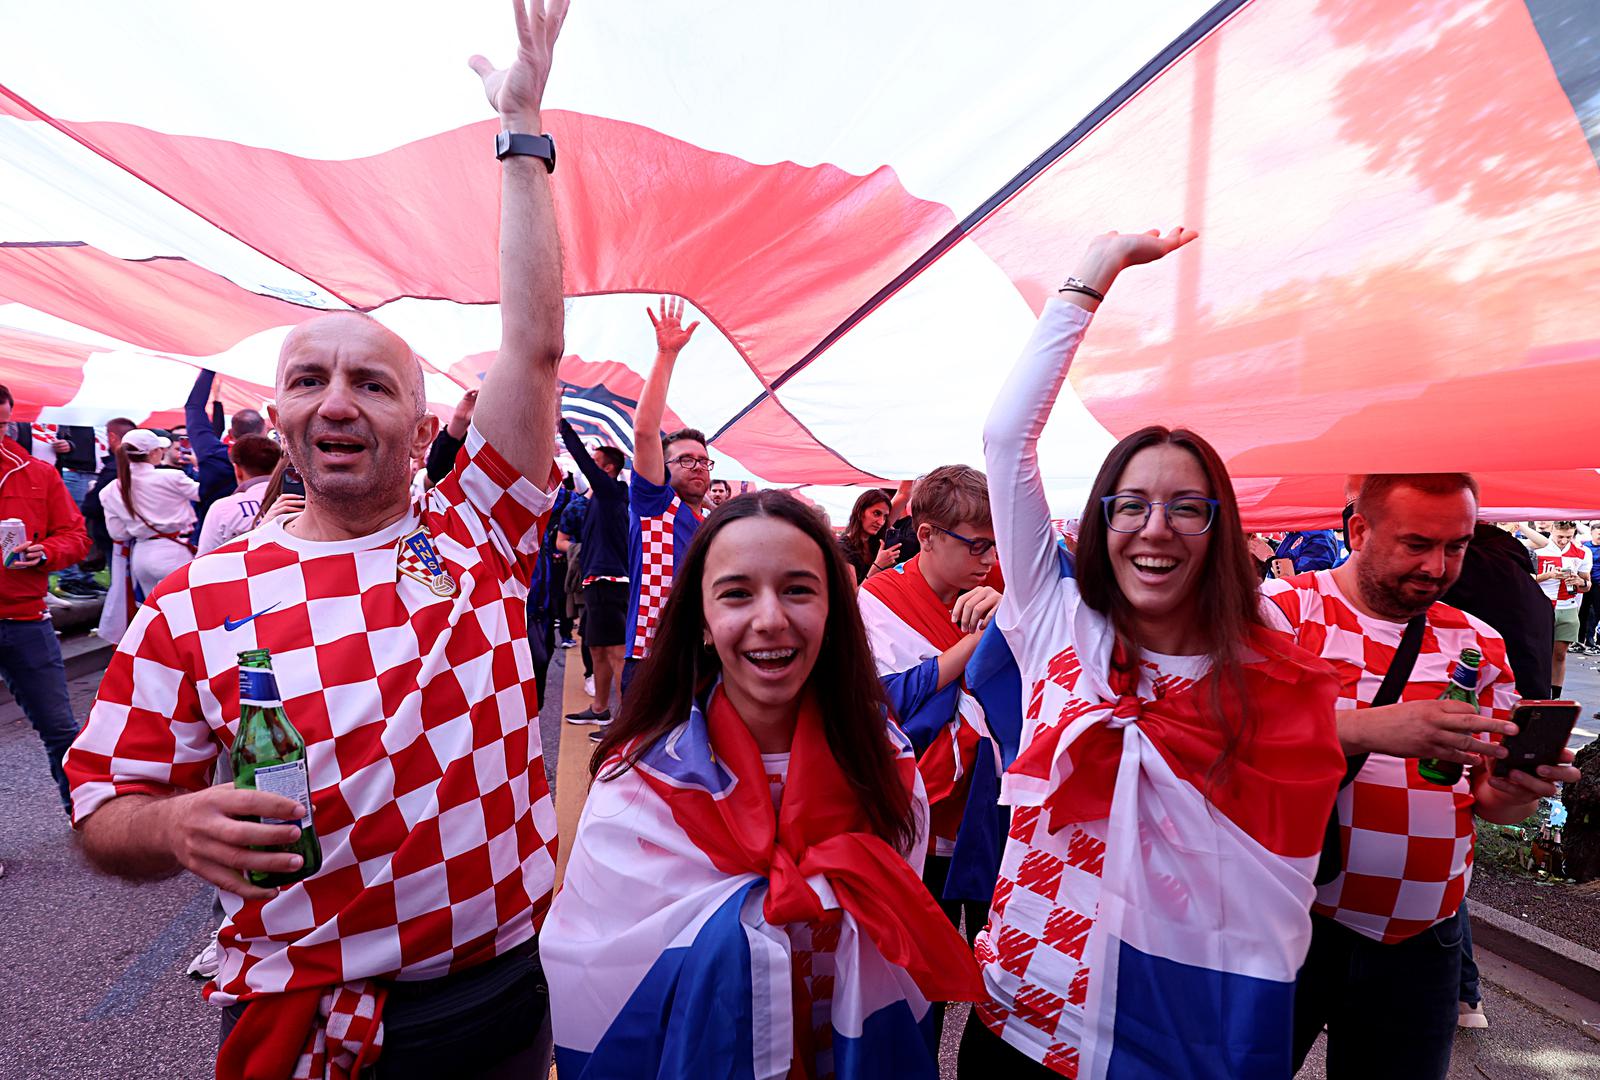 Najveća hrvatska navijačka zastava, ona iz Crikvenice, nakon Berlina, stigla je i u Hamburg. Čitavog dana traje veliko ludilo u gradu prije utakmice Hrvatske i Albanije